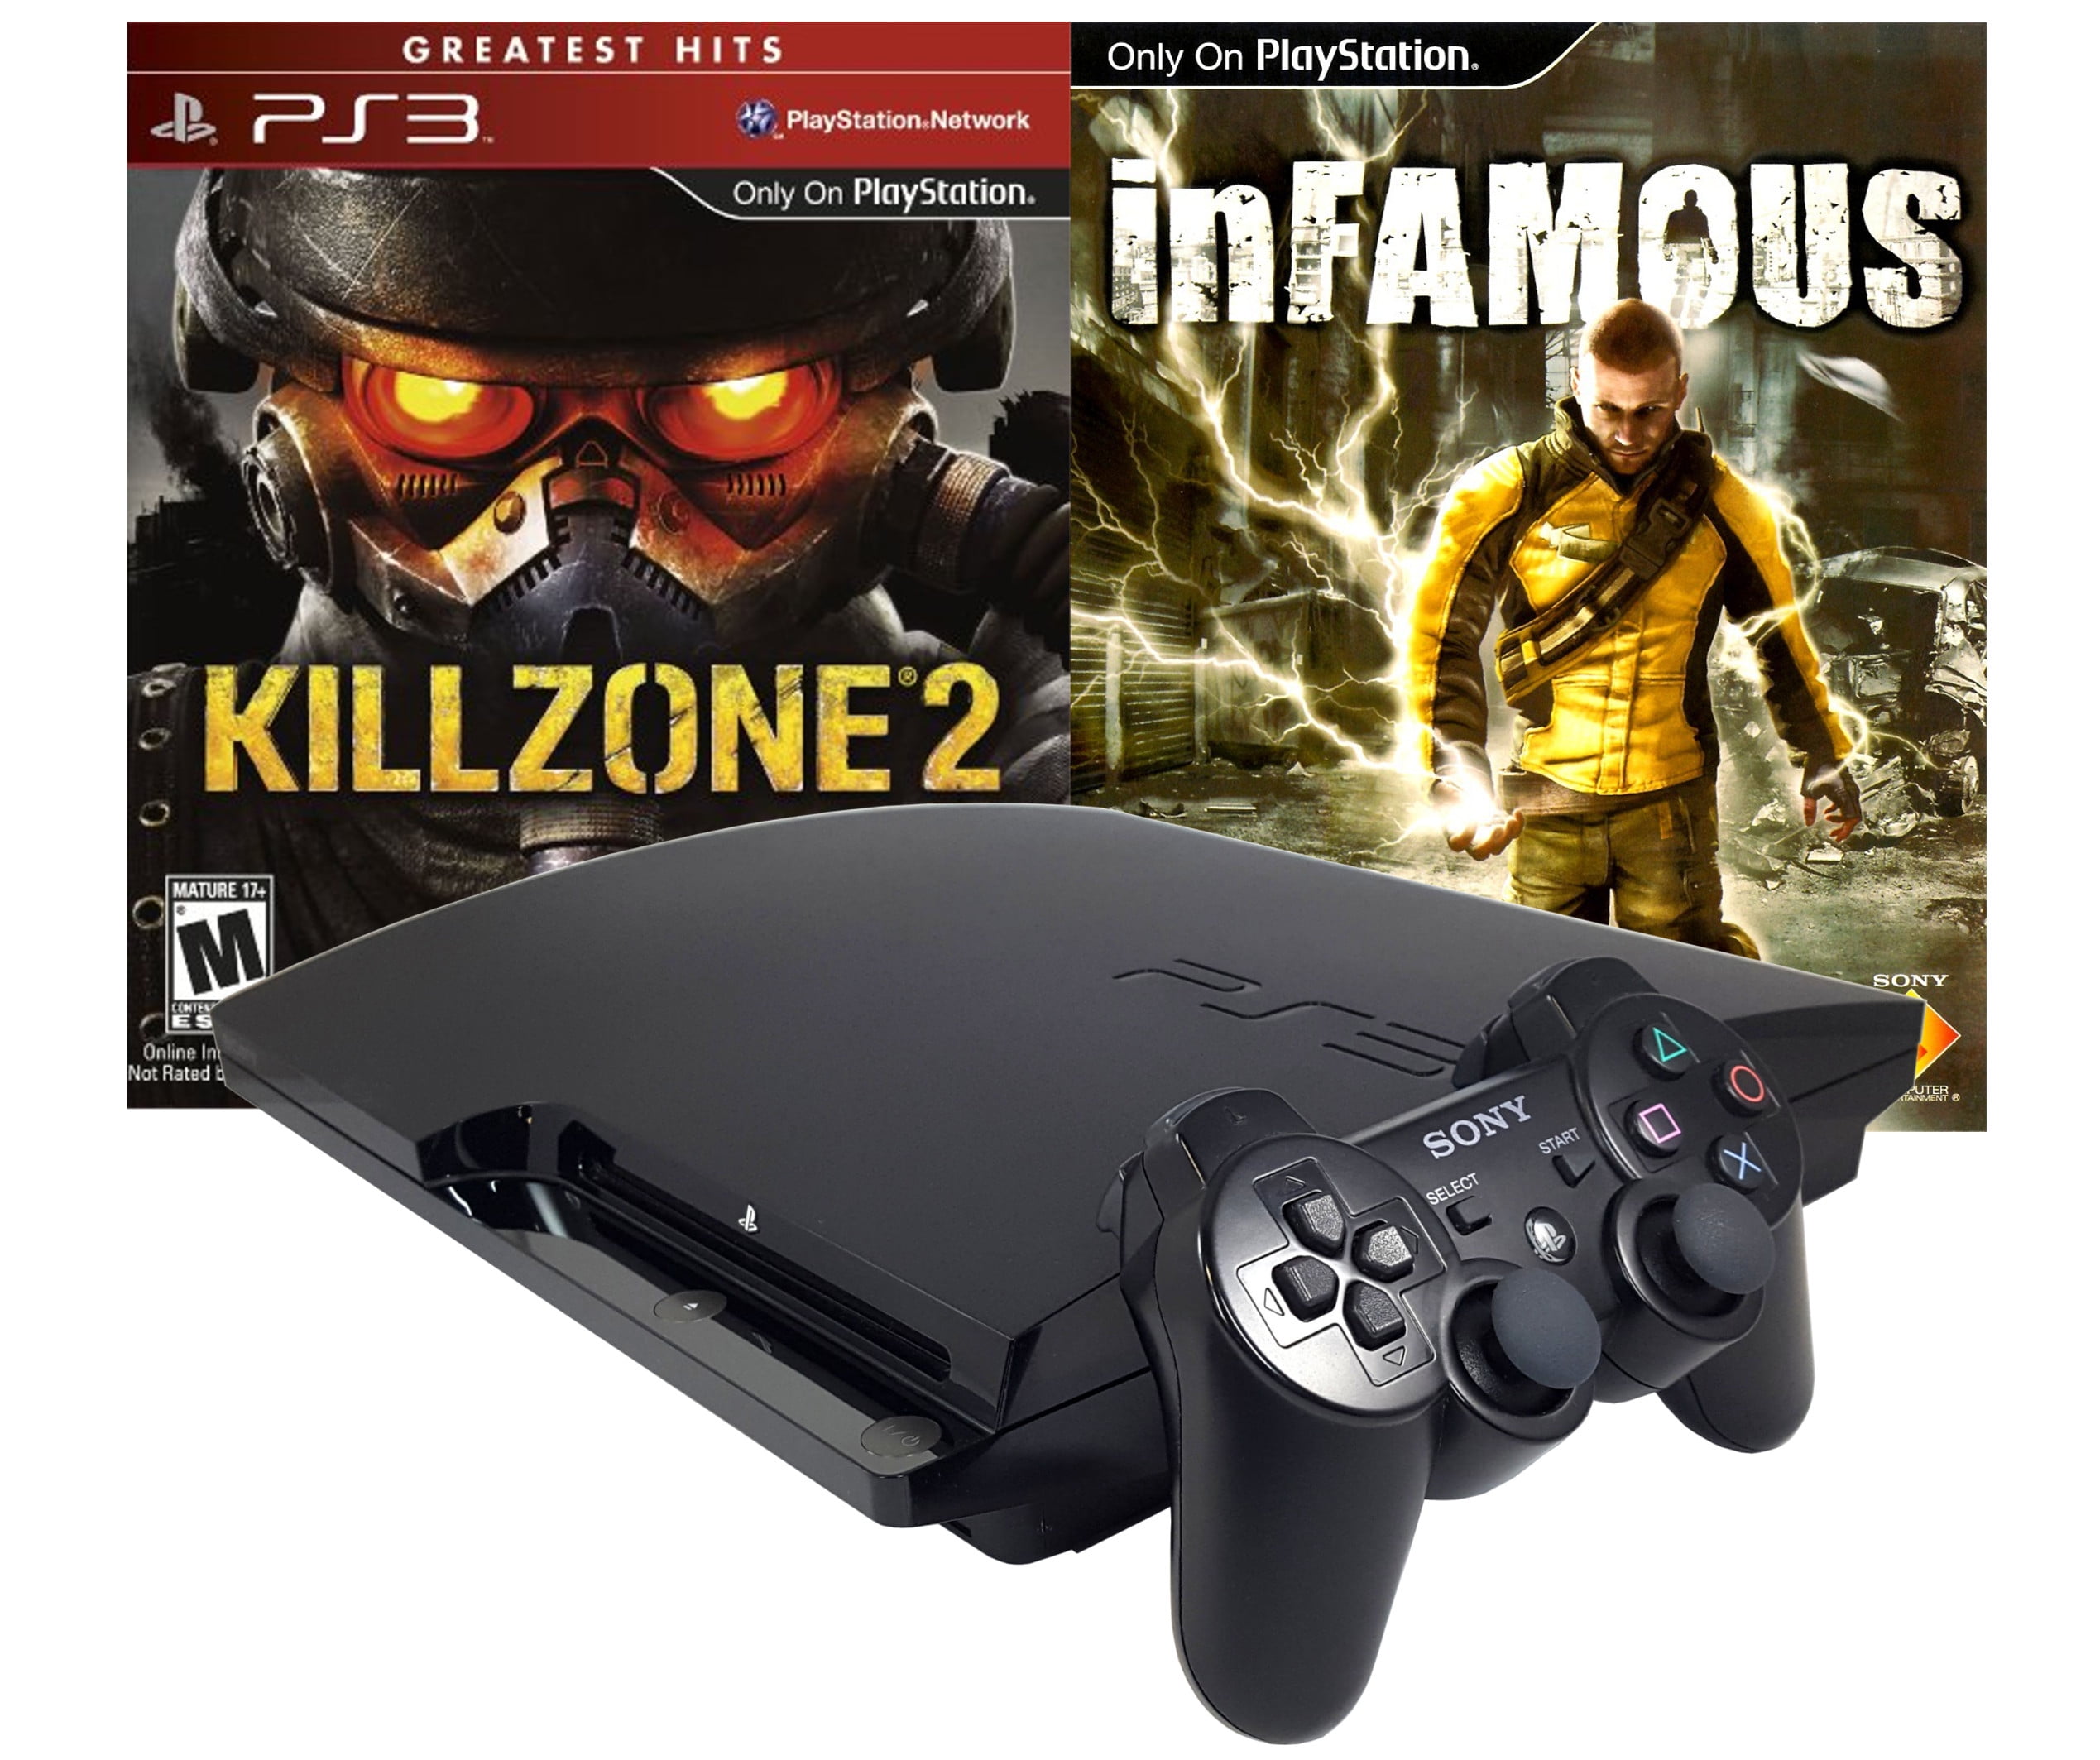 Killzone 2 - PS3 (SEMINOVO) - Interactive Gamestore